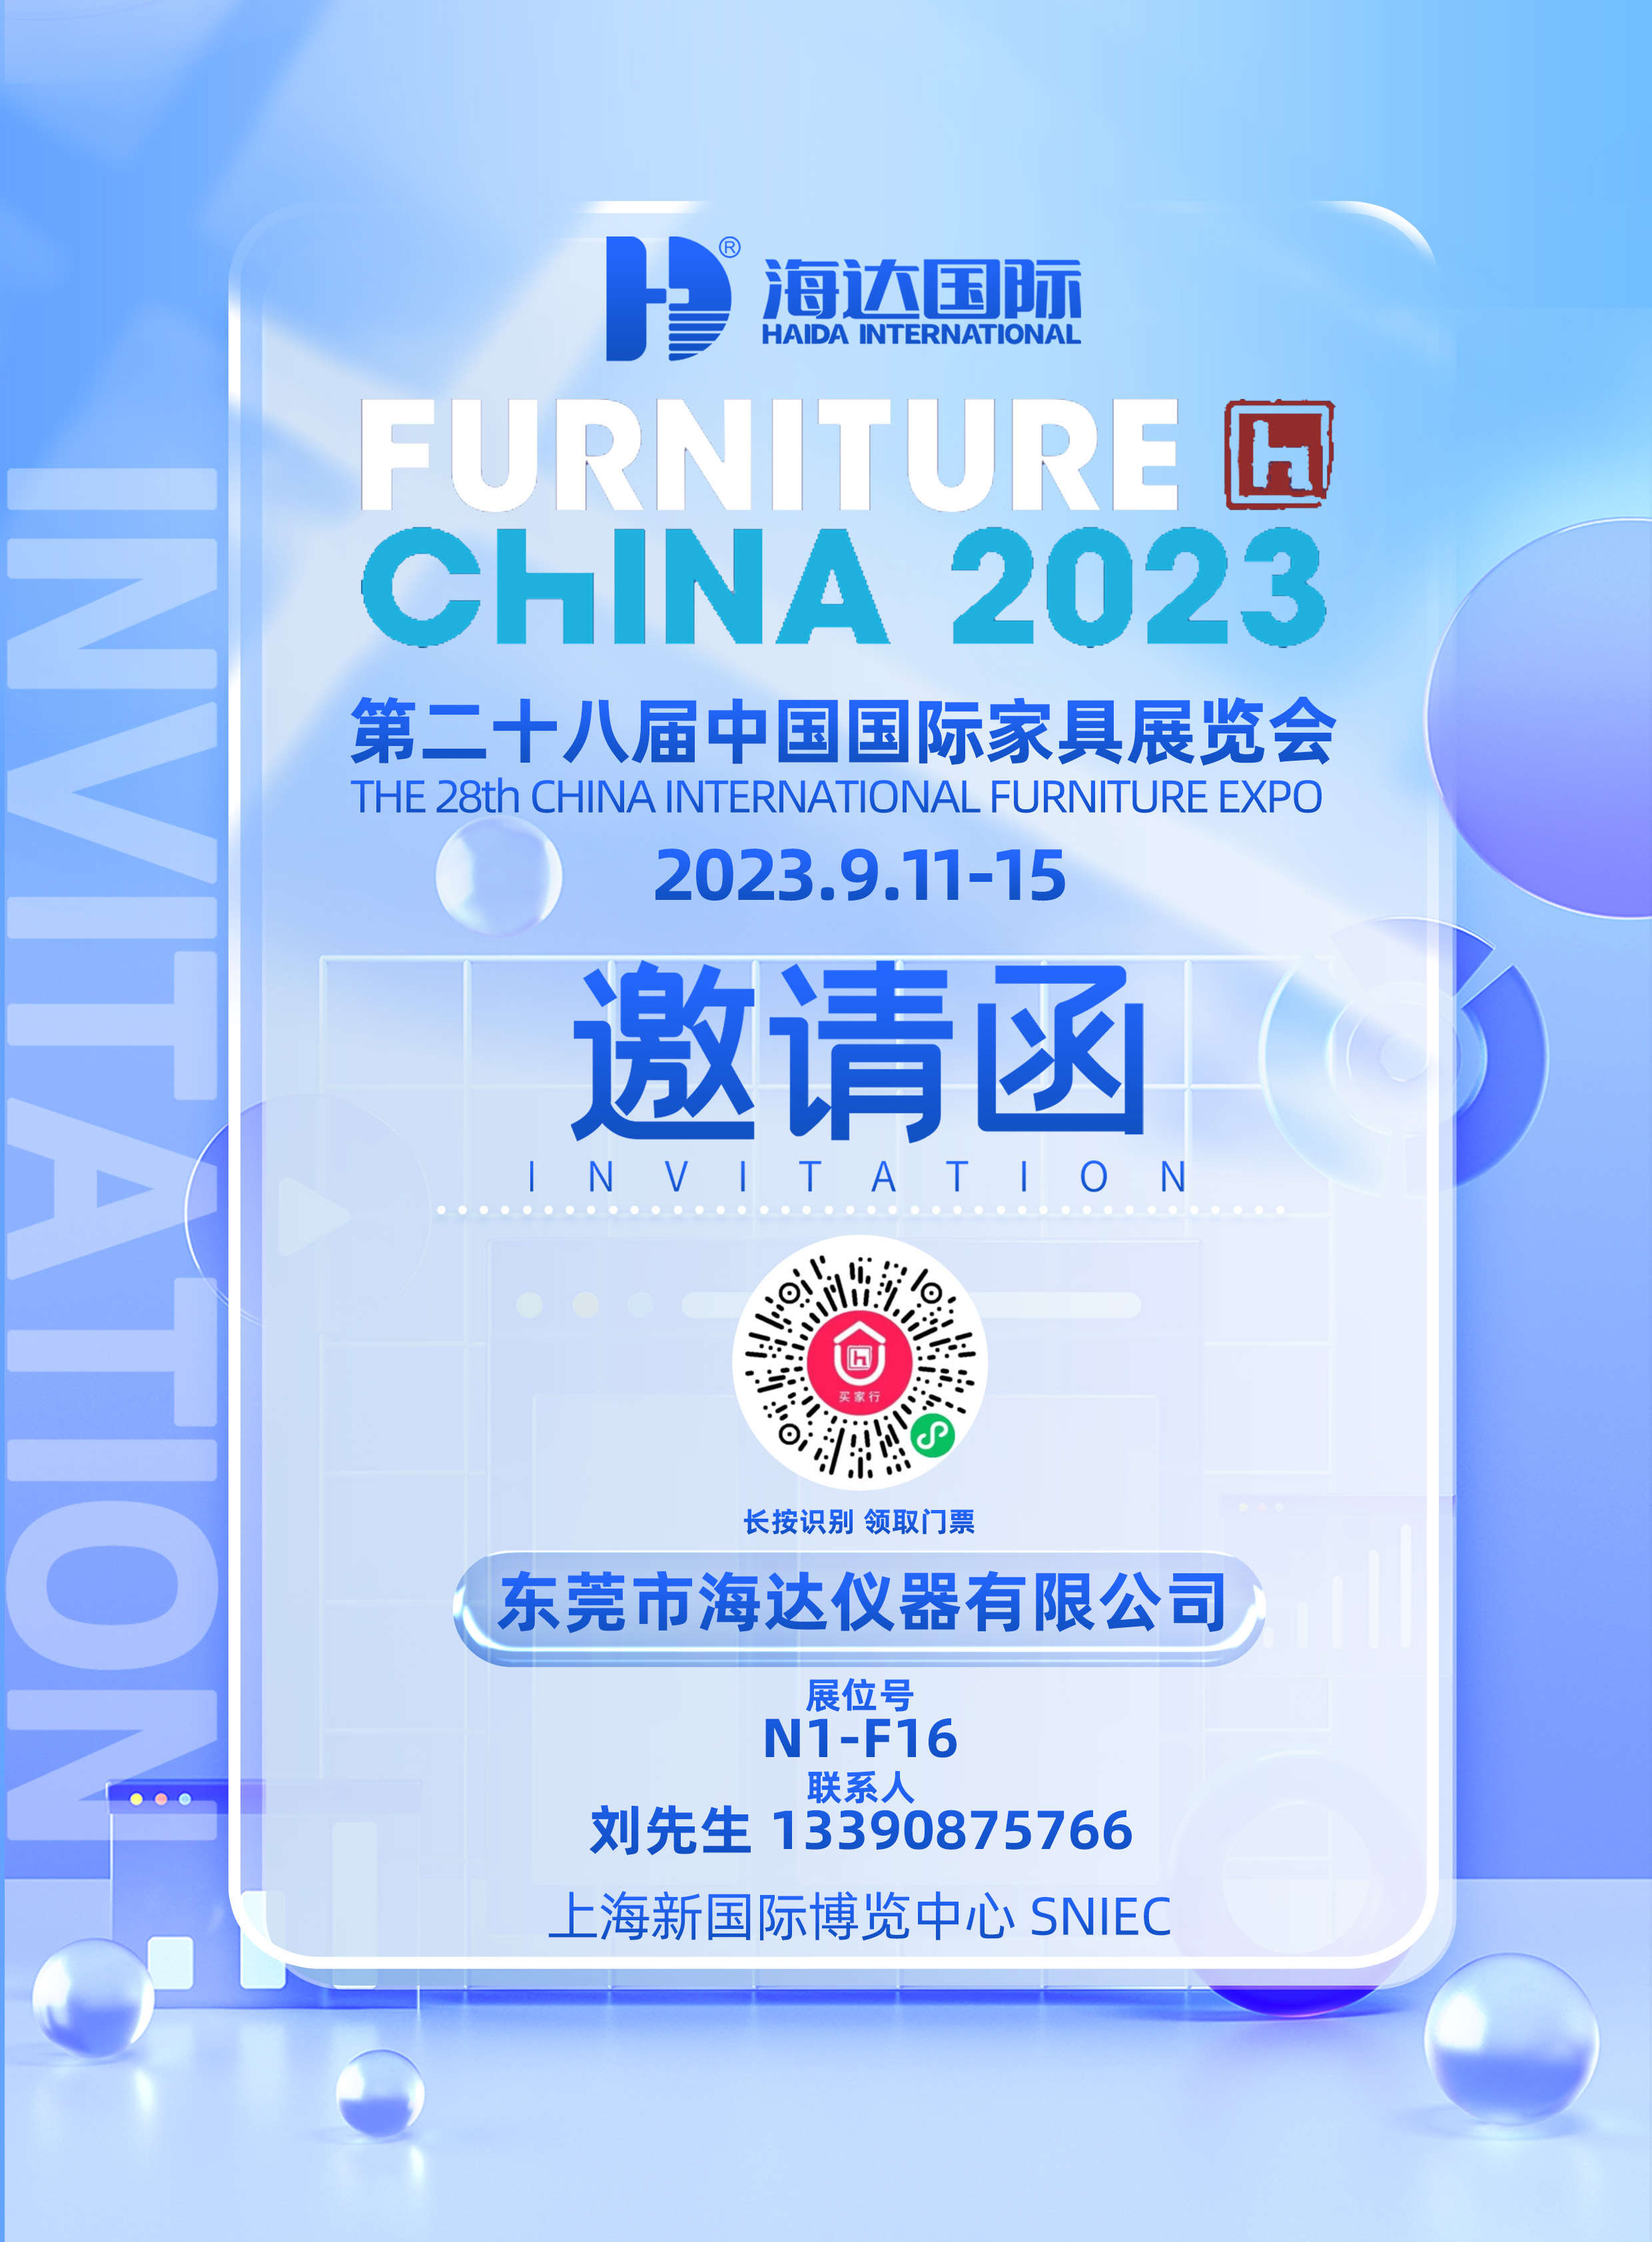 海達儀器:國際家具展覽會與您相約上海